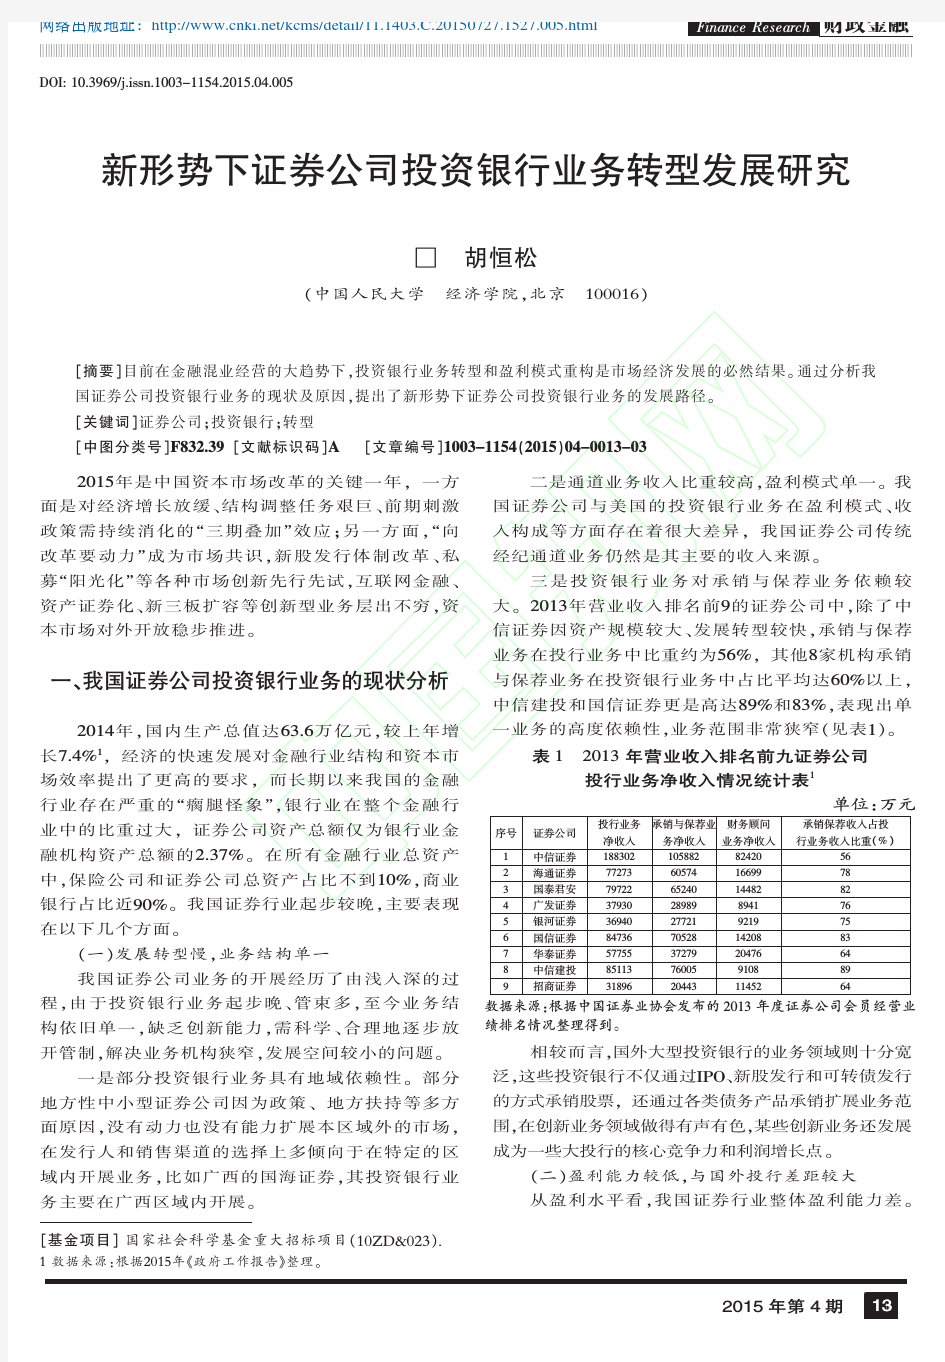 新形势下证券公司投资银行业务转型发展研究_胡恒松